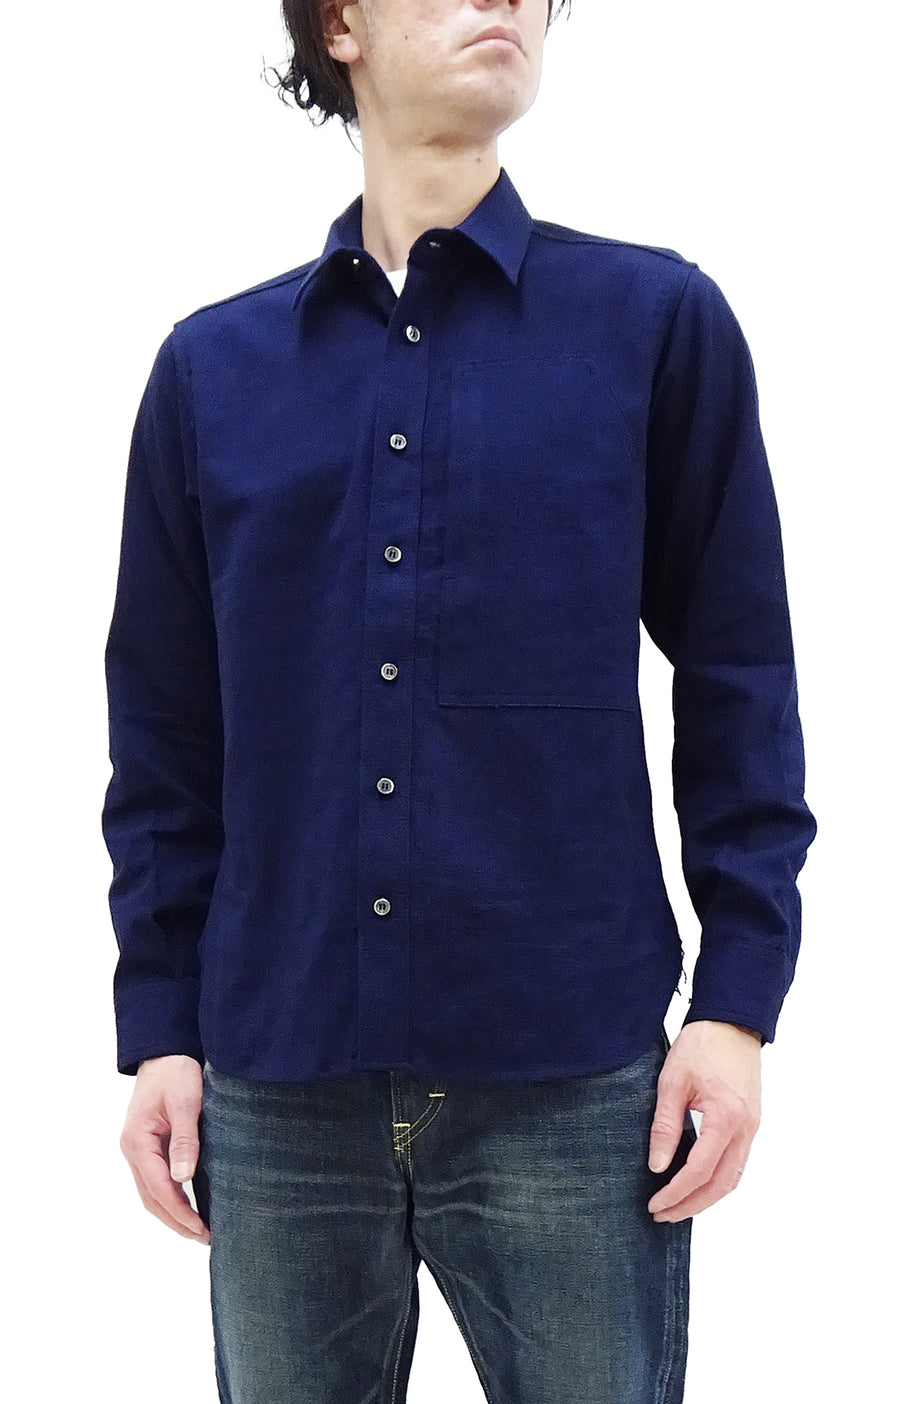 Momotaro Jeans Shirt Men's Plain Lightweight Cotton Dobby Long Sleeve Button Up Work Shirt MXLS1008 Indigo